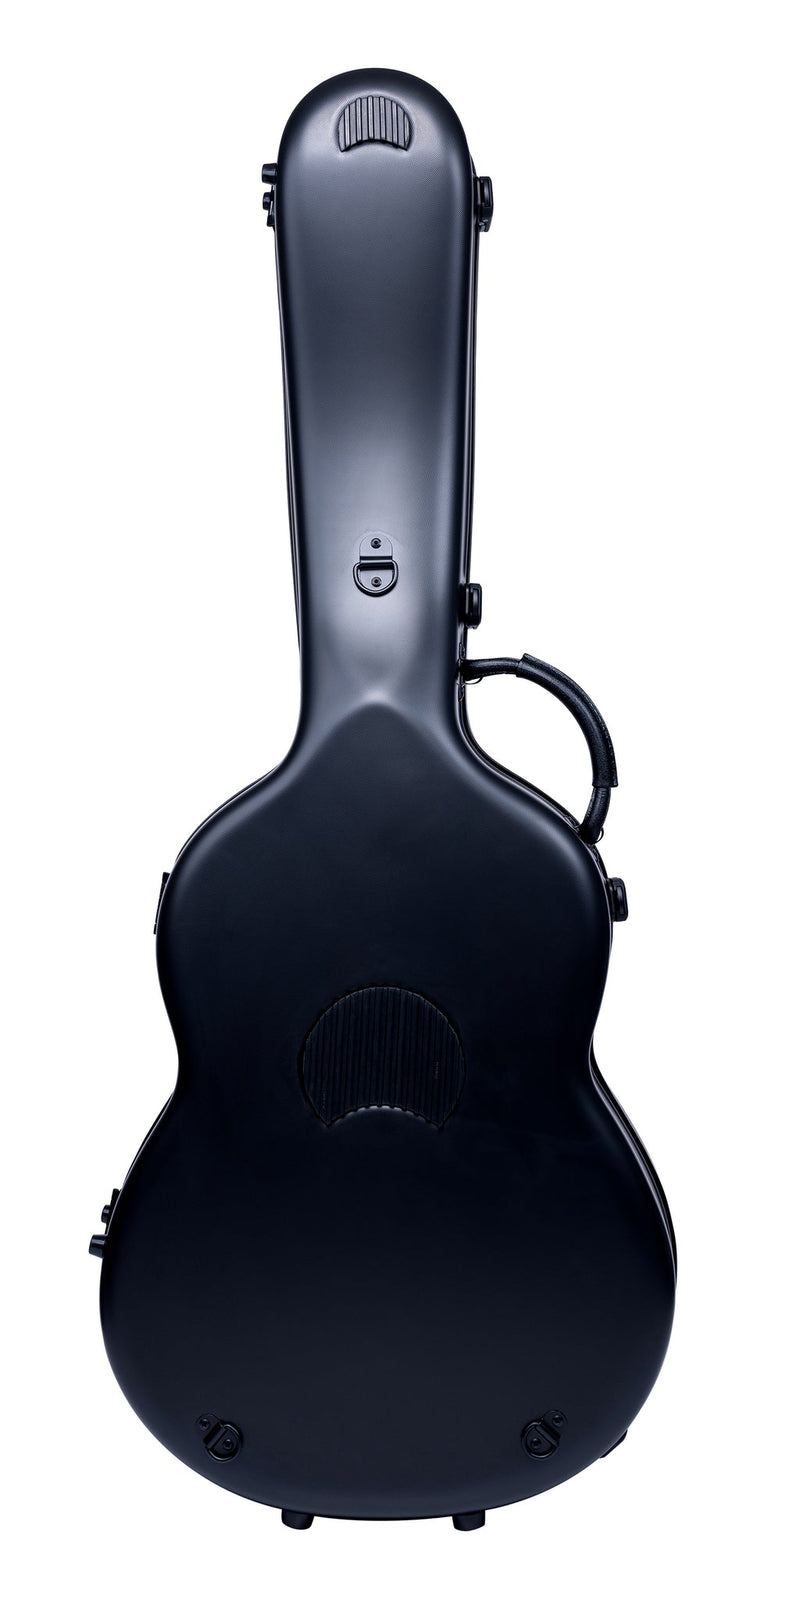 Bam 8002SNN Classic Classical Guitar ABS Case (Black)